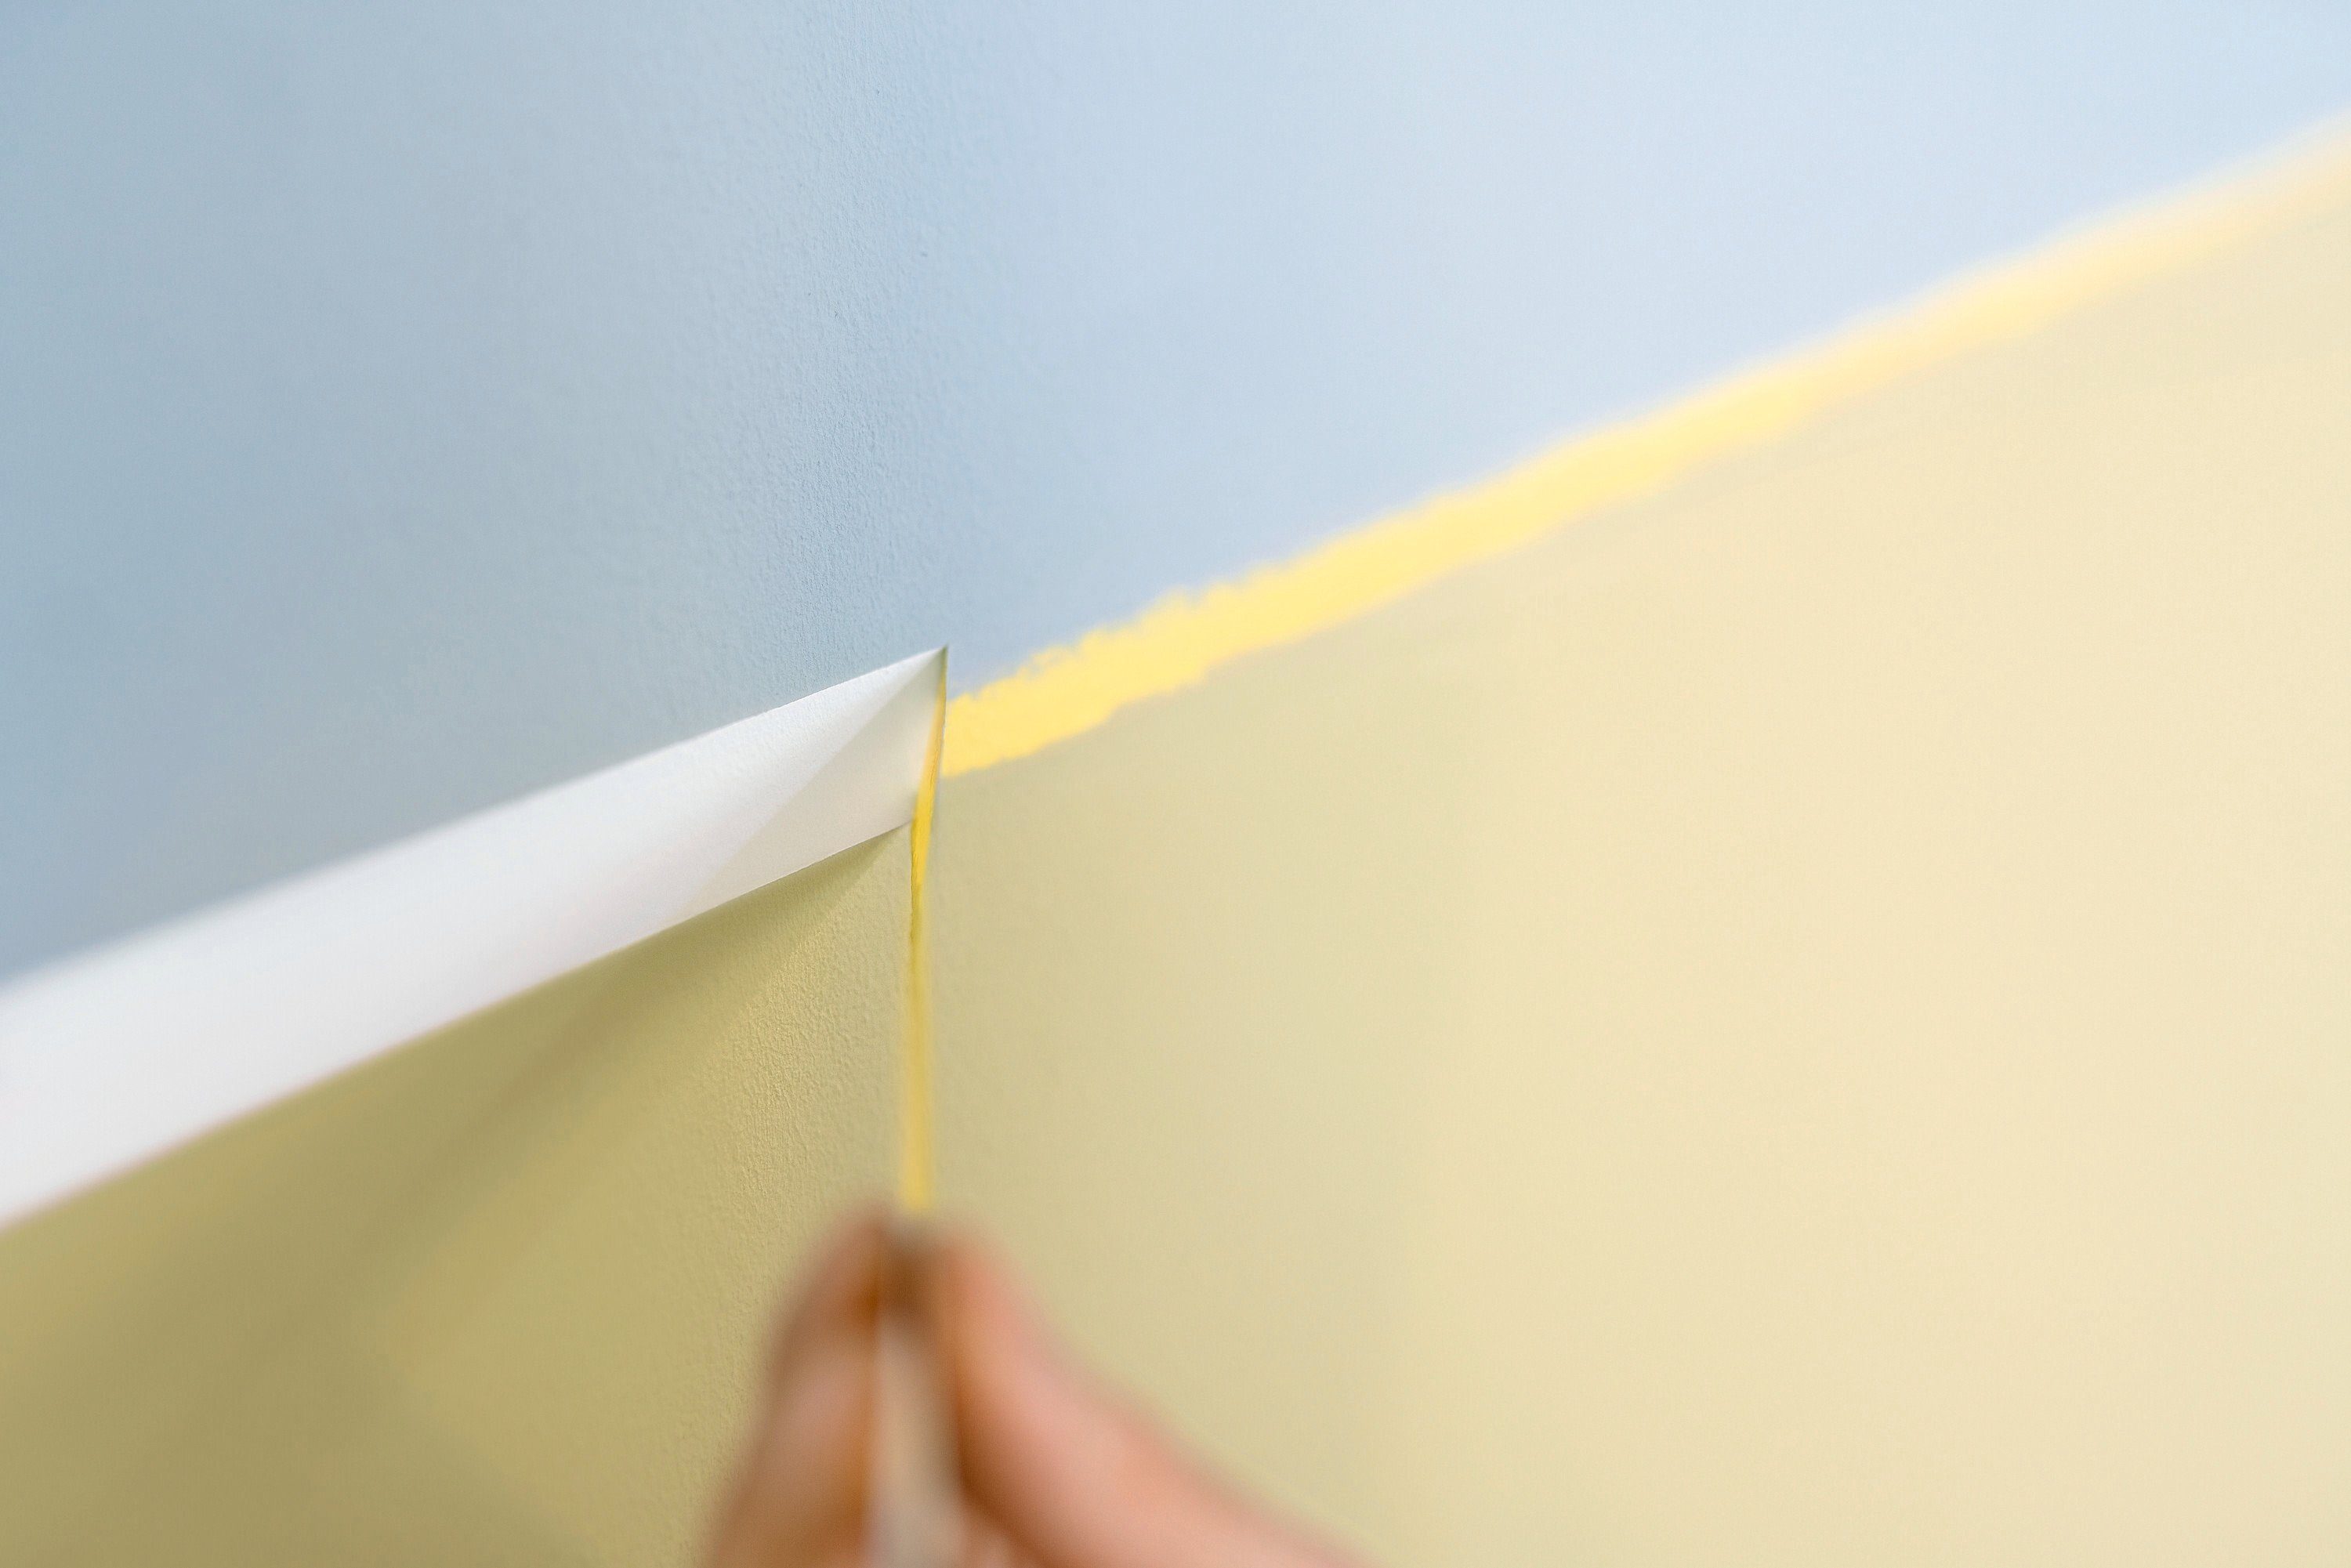 tesa Kreppband PROFESSIONAL Malerband sauberes Abkleben Abklebeband. Malerkrepp gelb (Packung, für 1-St) Malerarbeiten bei 